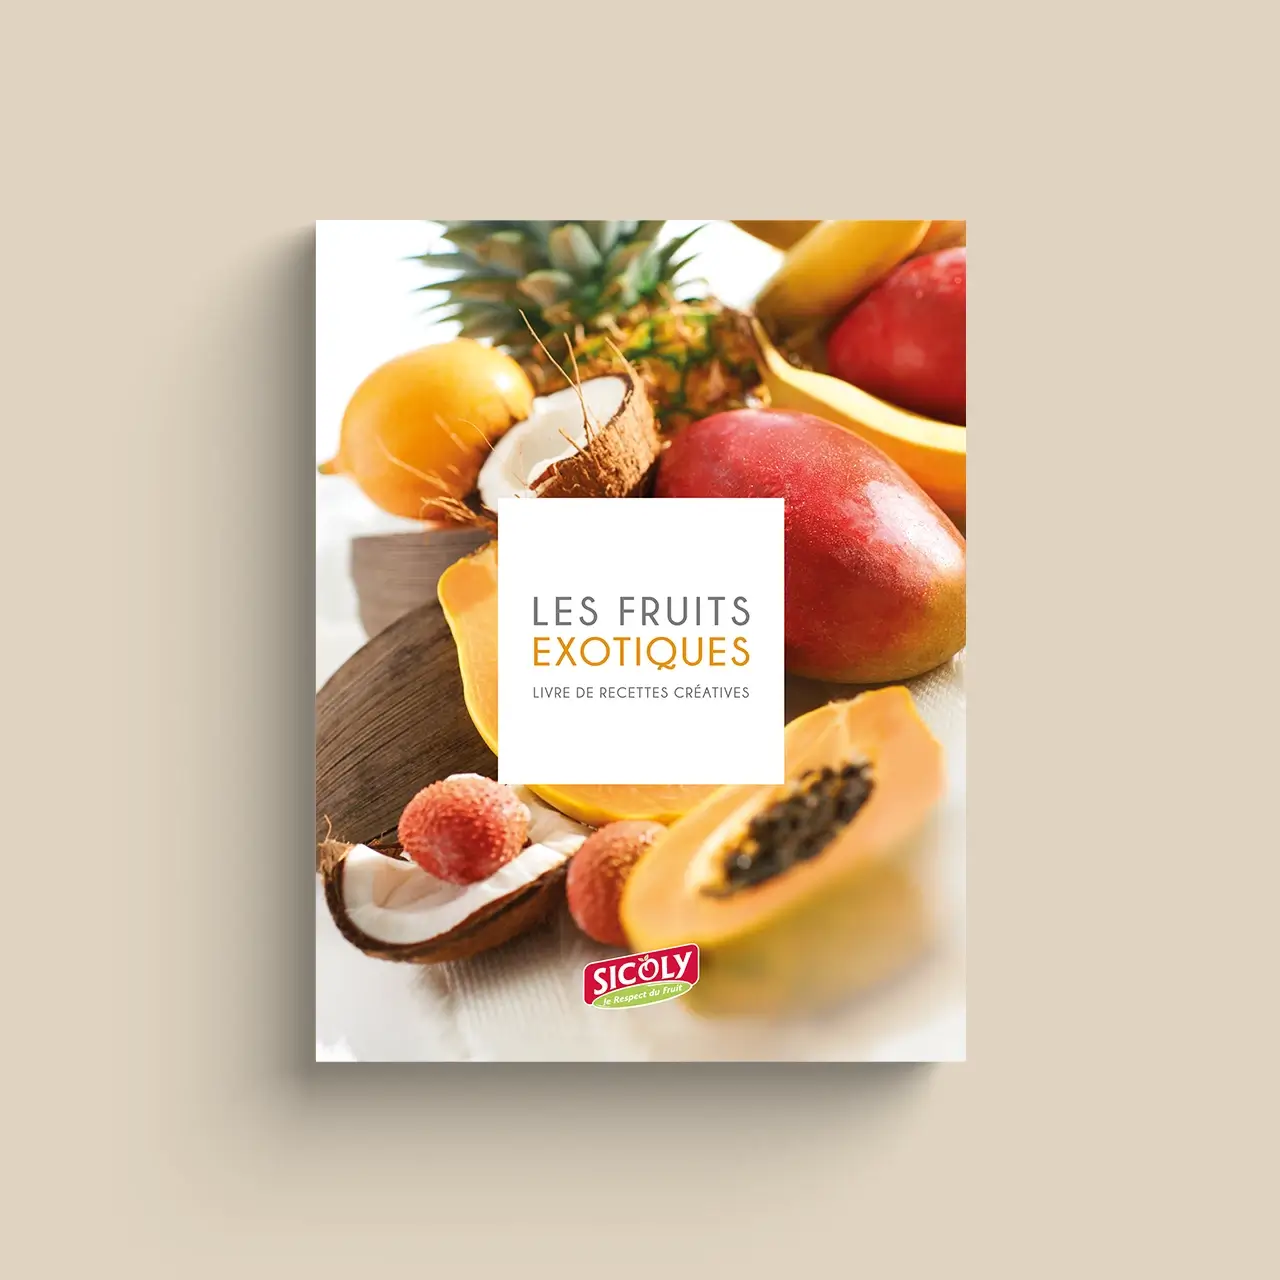 Les Fruits Exotiques - Livre de recettes créatives par Sicoly, coopérative, producteur de fruits frais, fournisseur de purées surgelées et fruits transformés